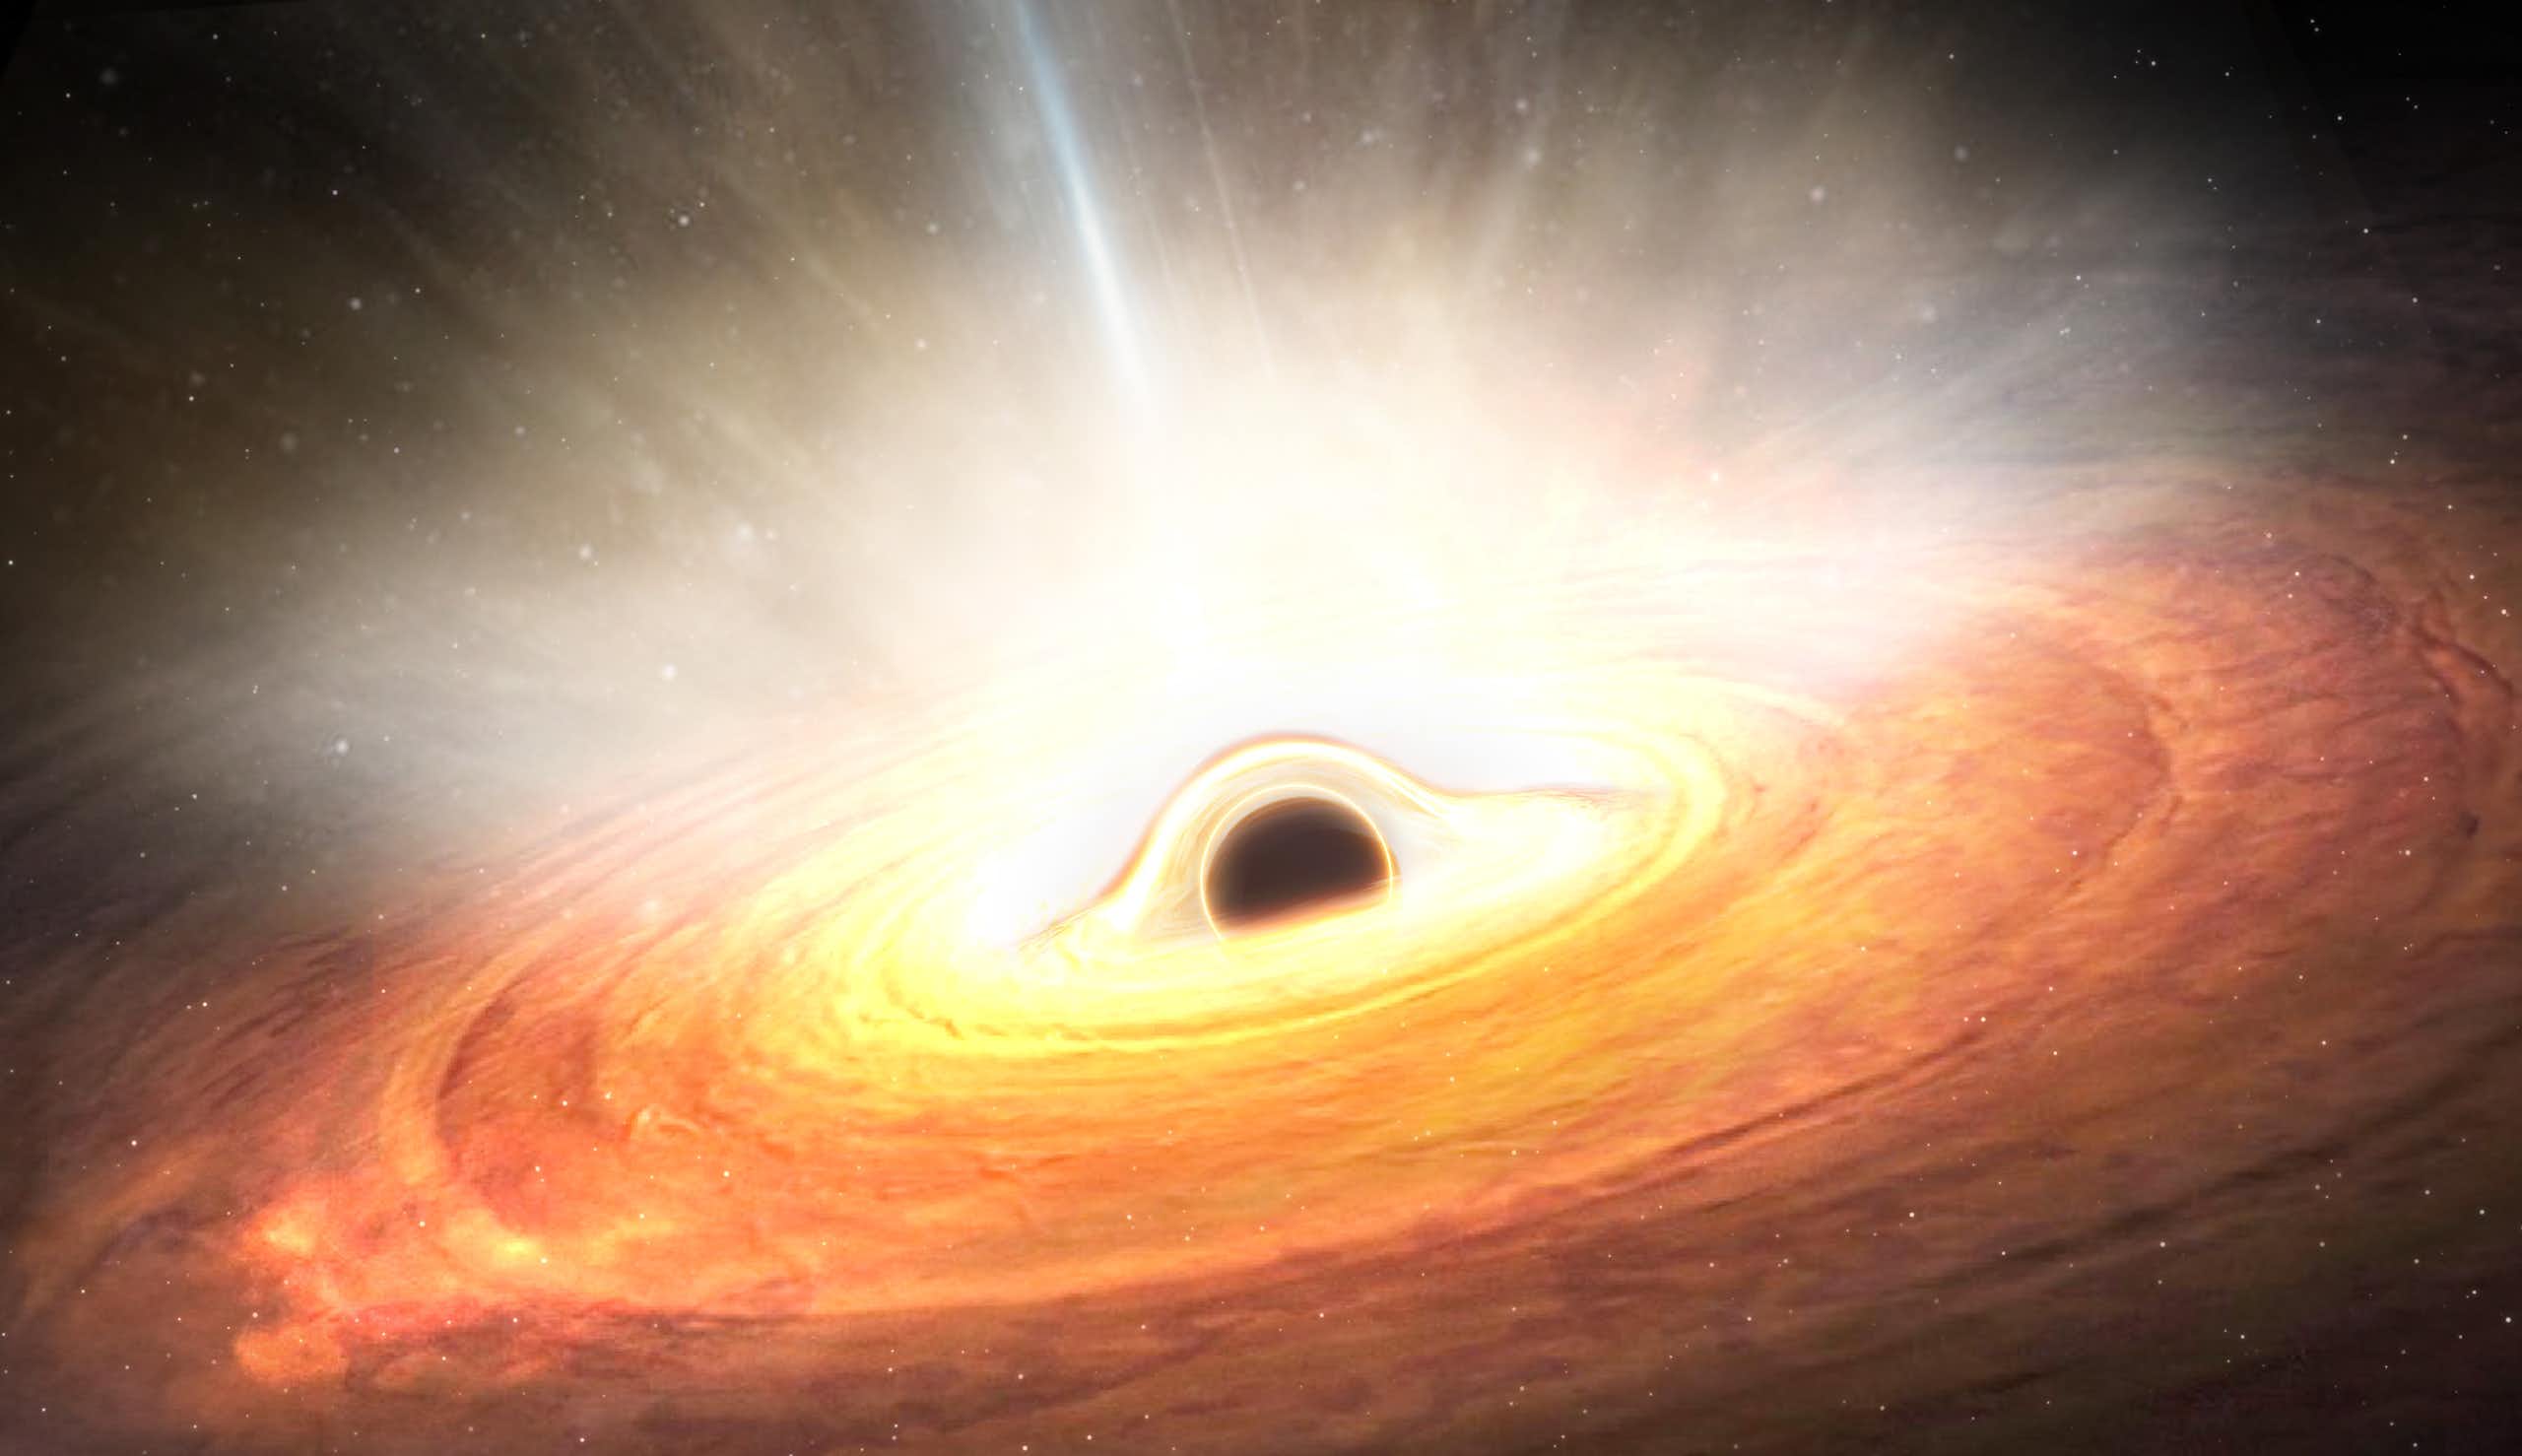 Vue d'artiste d'un trou noir supermassif entouré par un disque d'accrétion, la matière qui gravite autour.